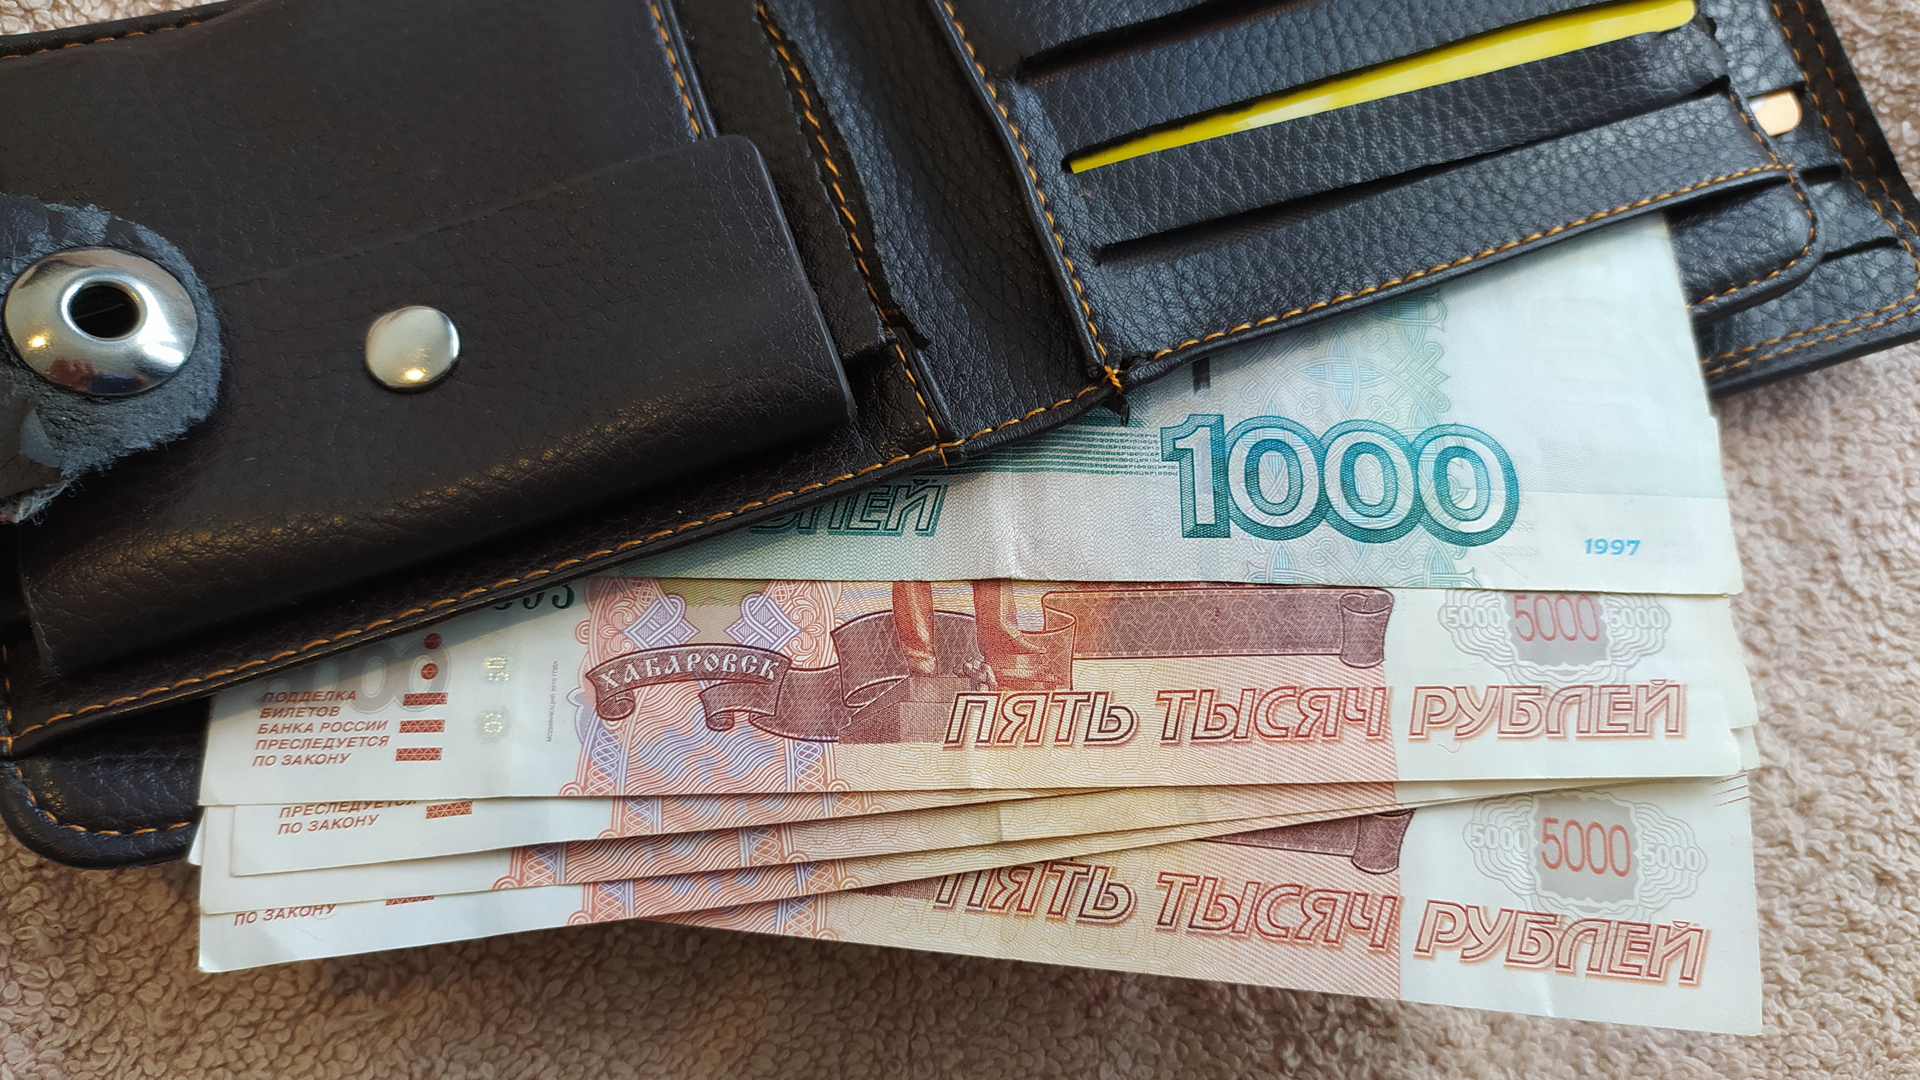 Rubelscheine in einem Portemonnaie. | picture alliance / Russian Look